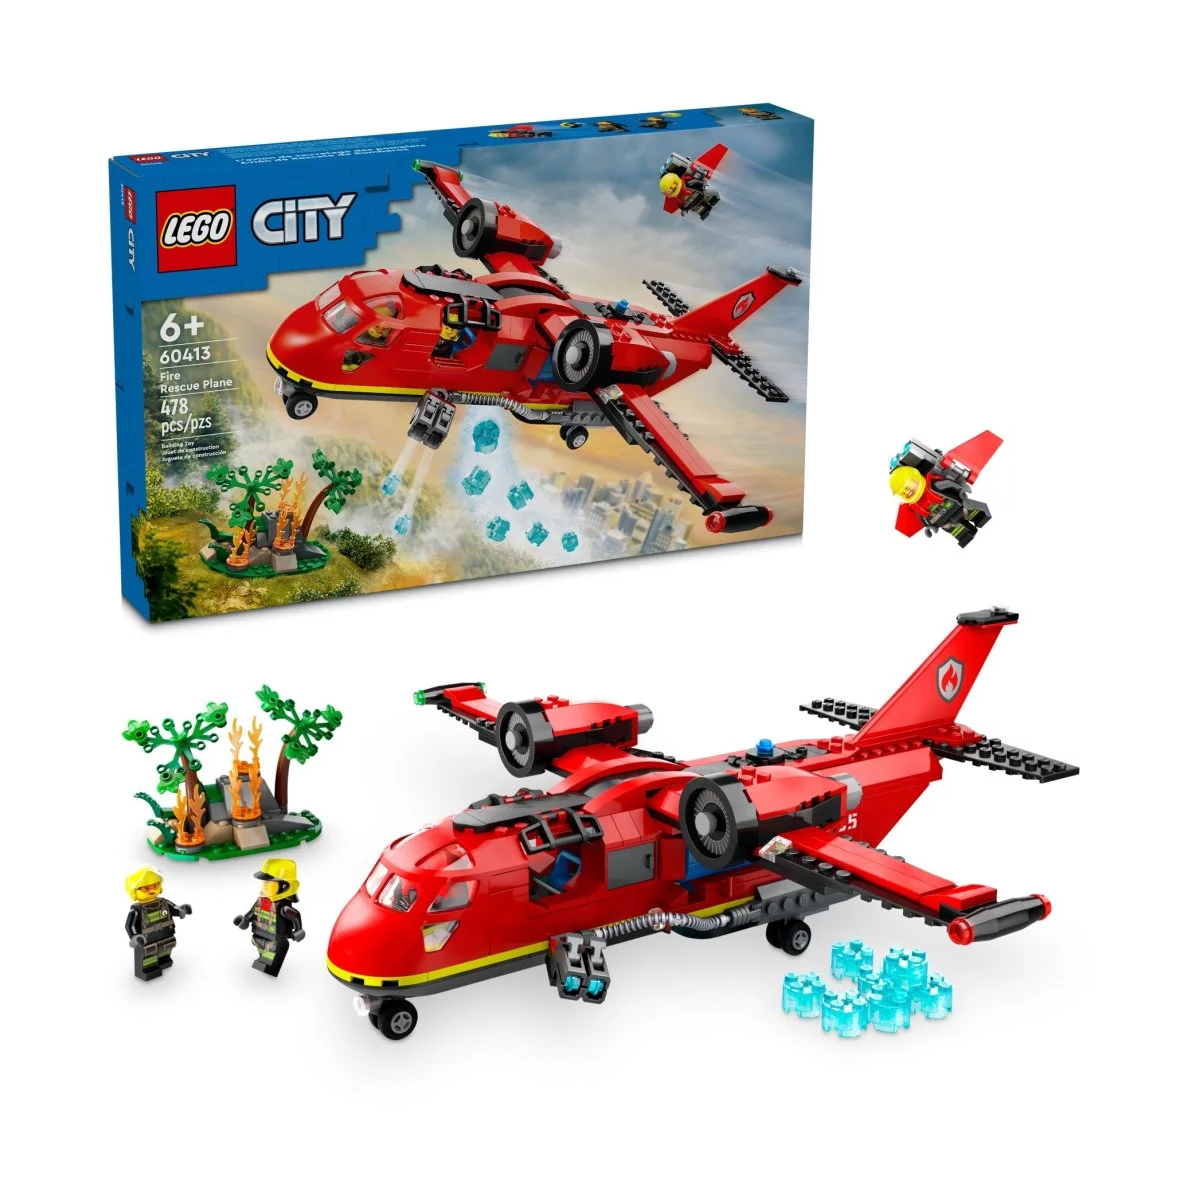 Конструктор Lego City Fire Rescue Plane 60413, 478 деталей конструктор lego friends 41752 морской спасательный самолет